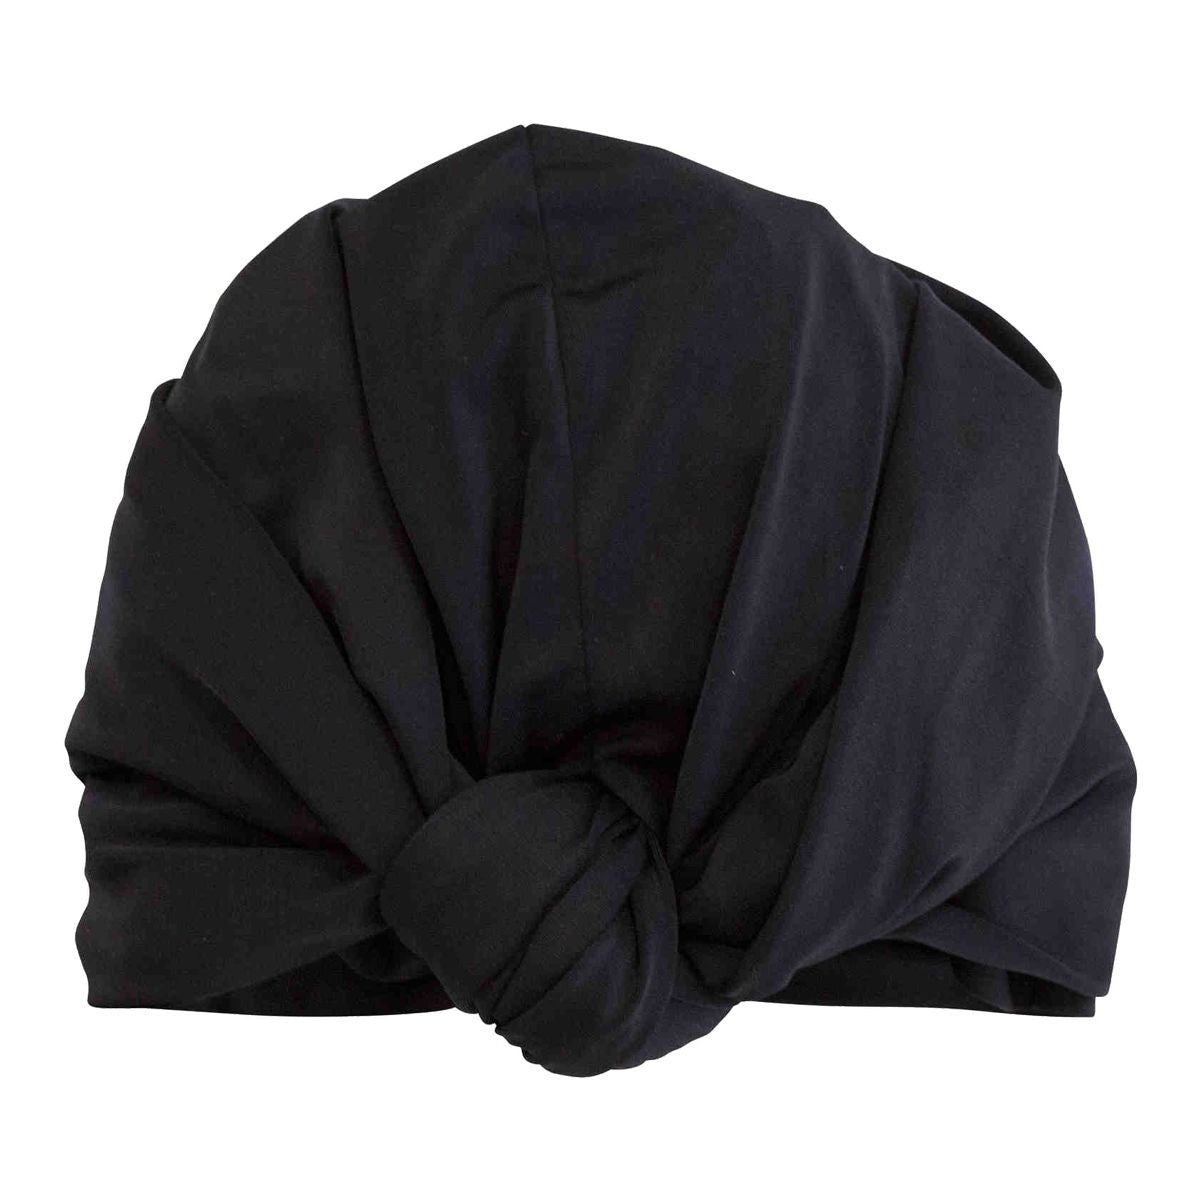 DAHLIA shower cap in Black